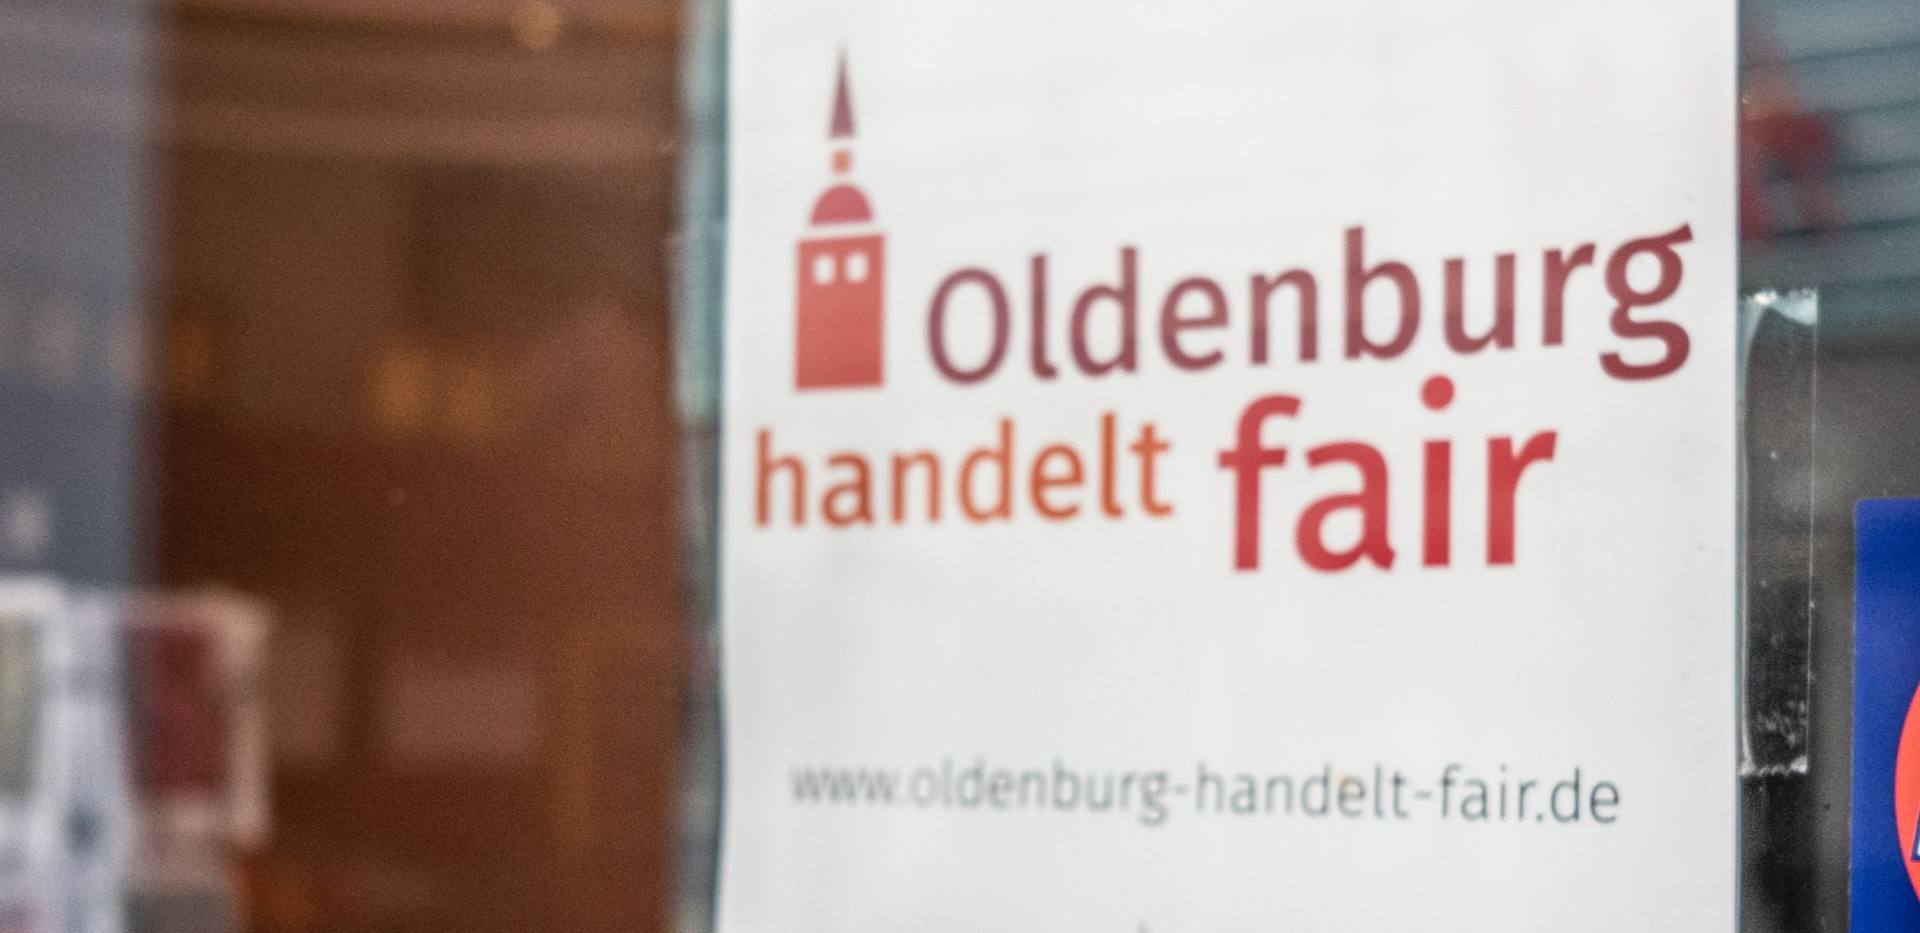 Werbeschild "Oldenburg handelt fair" in einem Fenster.